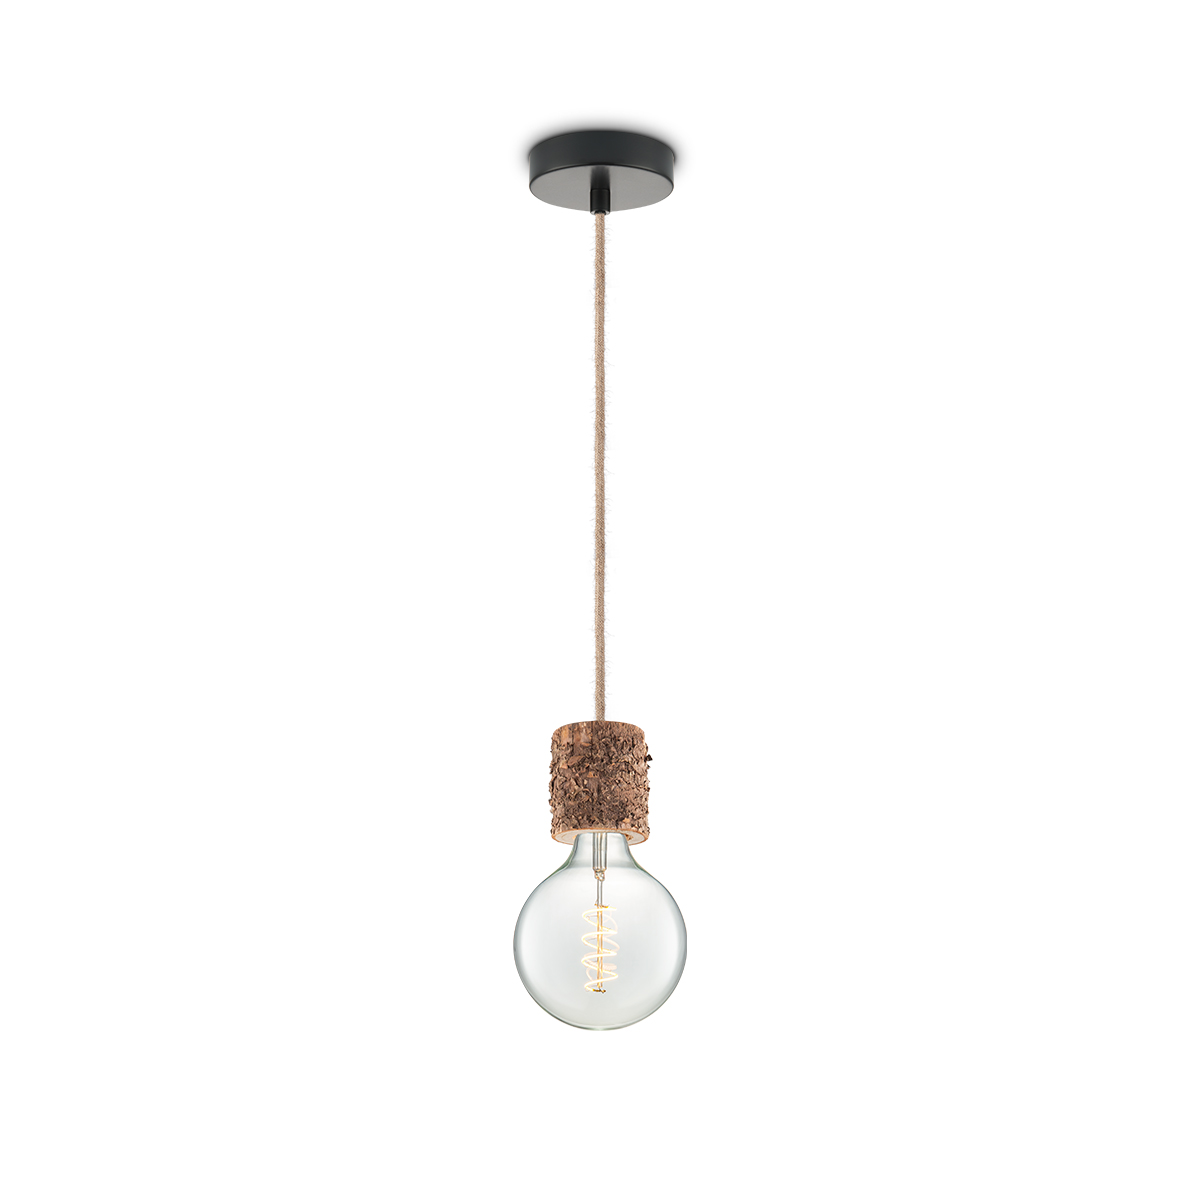 Tangla lighting - TLP7059-08NT - LED Pendant lamp 1 Light - metal + FSC wood -  natural - small rough - E27